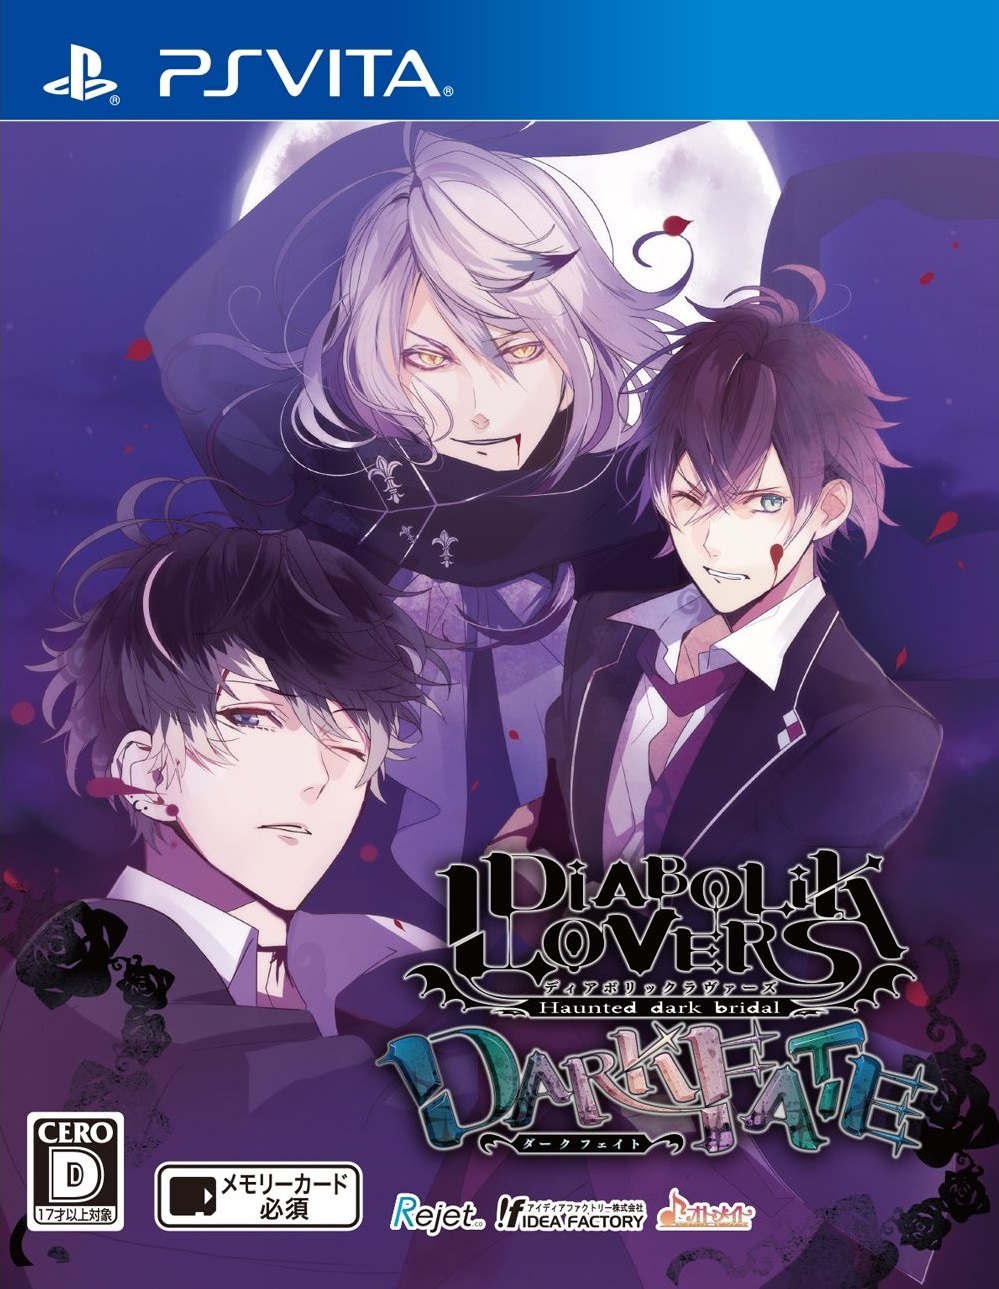 download free diabolik lovers dark fate